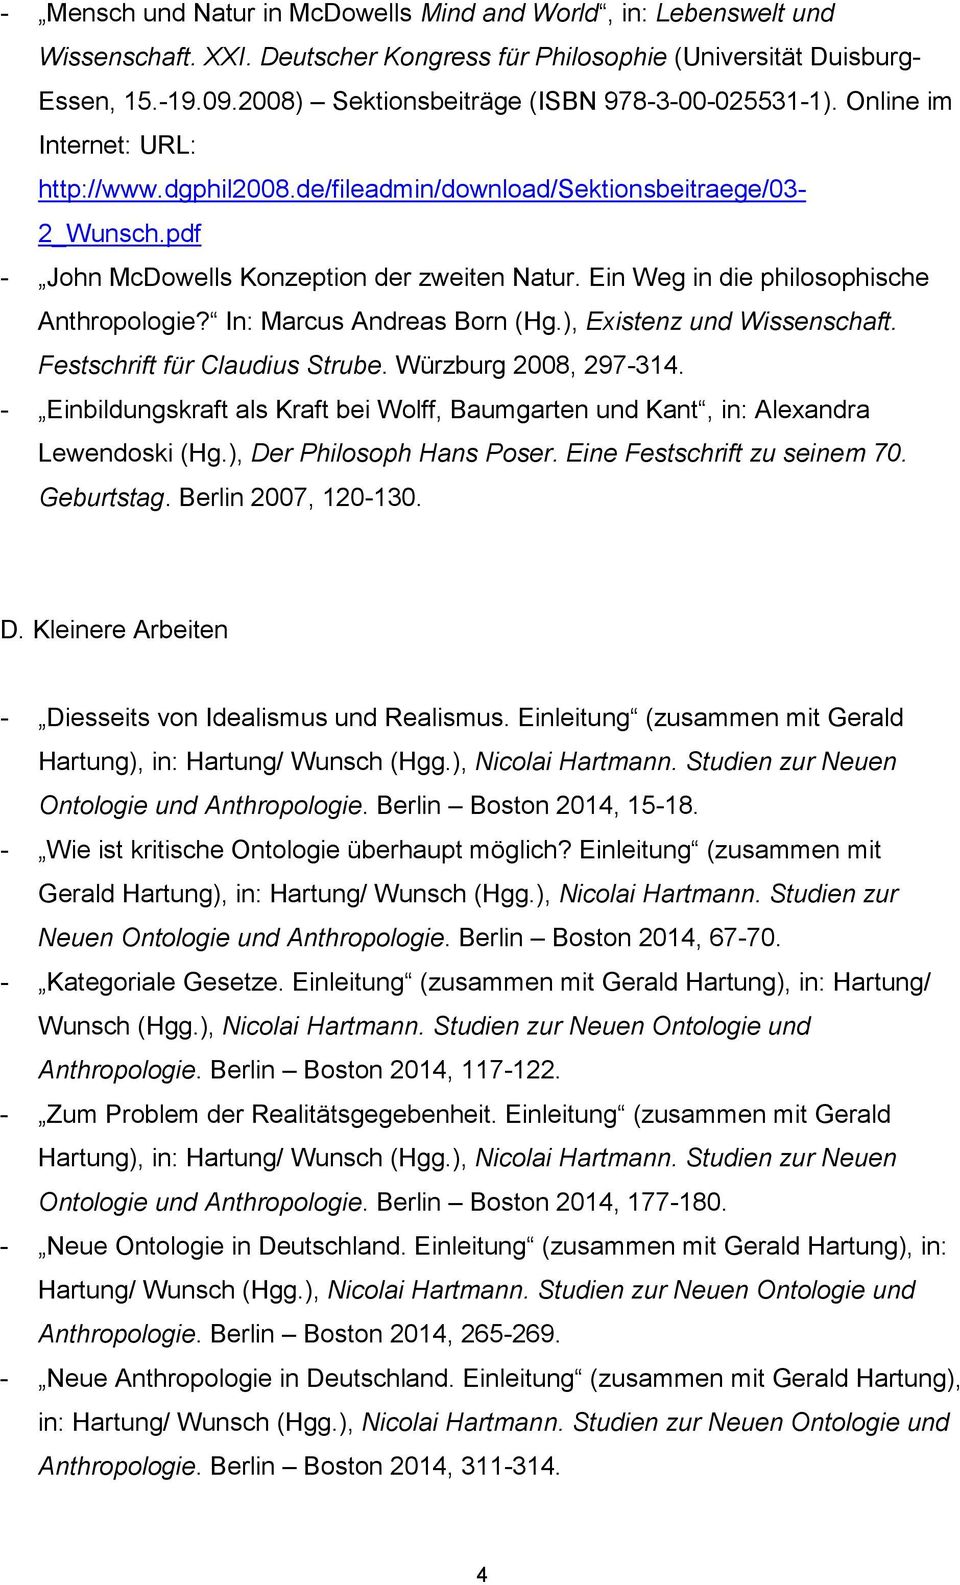 Ein Weg in die philosophische Anthropologie? In: Marcus Andreas Born (Hg.), Existenz und Wissenschaft. Festschrift für Claudius Strube. Würzburg 2008, 297-314.